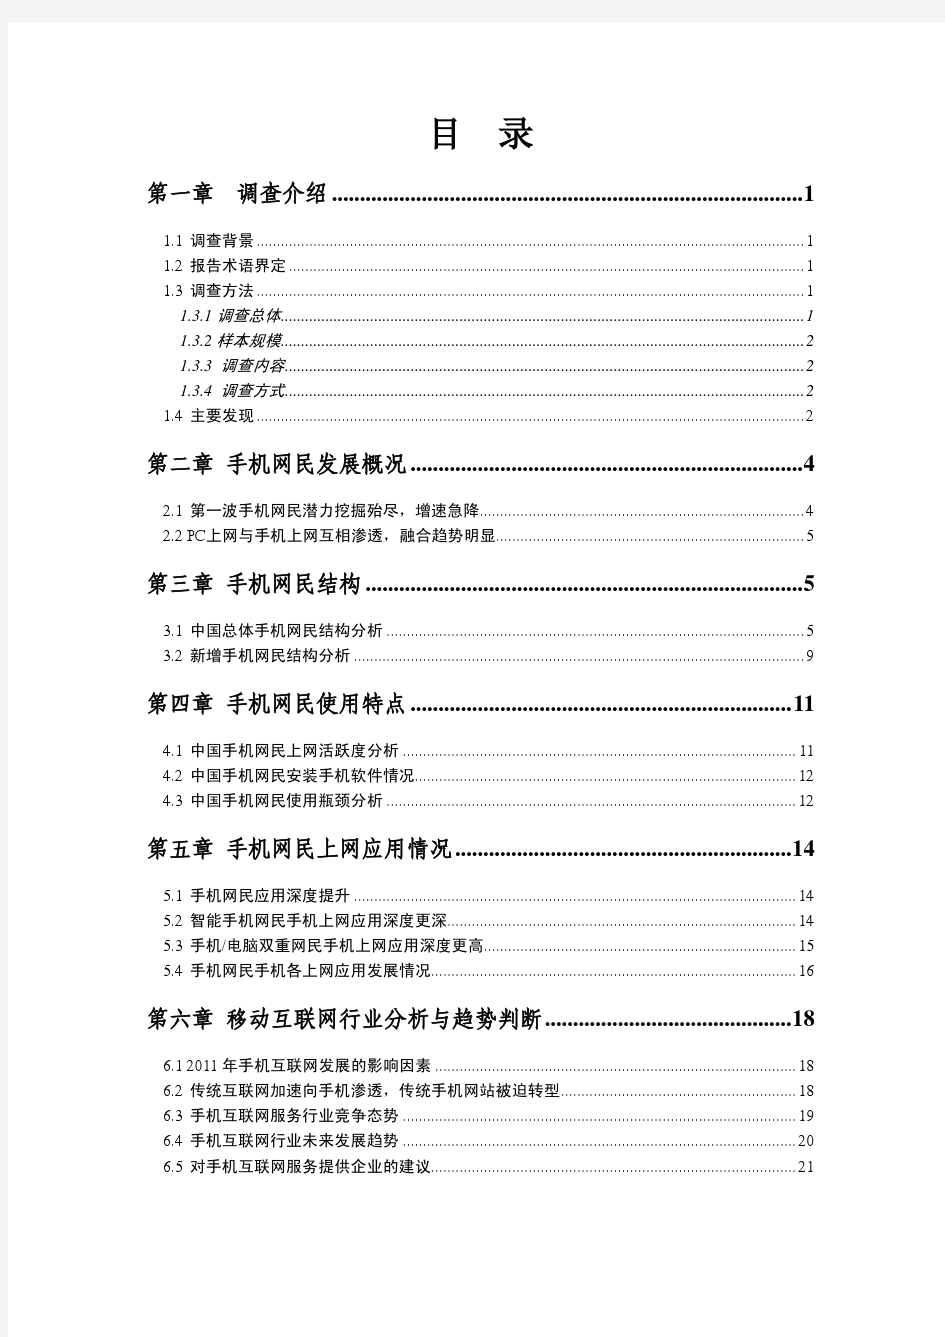 2010年中国手机上网行为研究报告